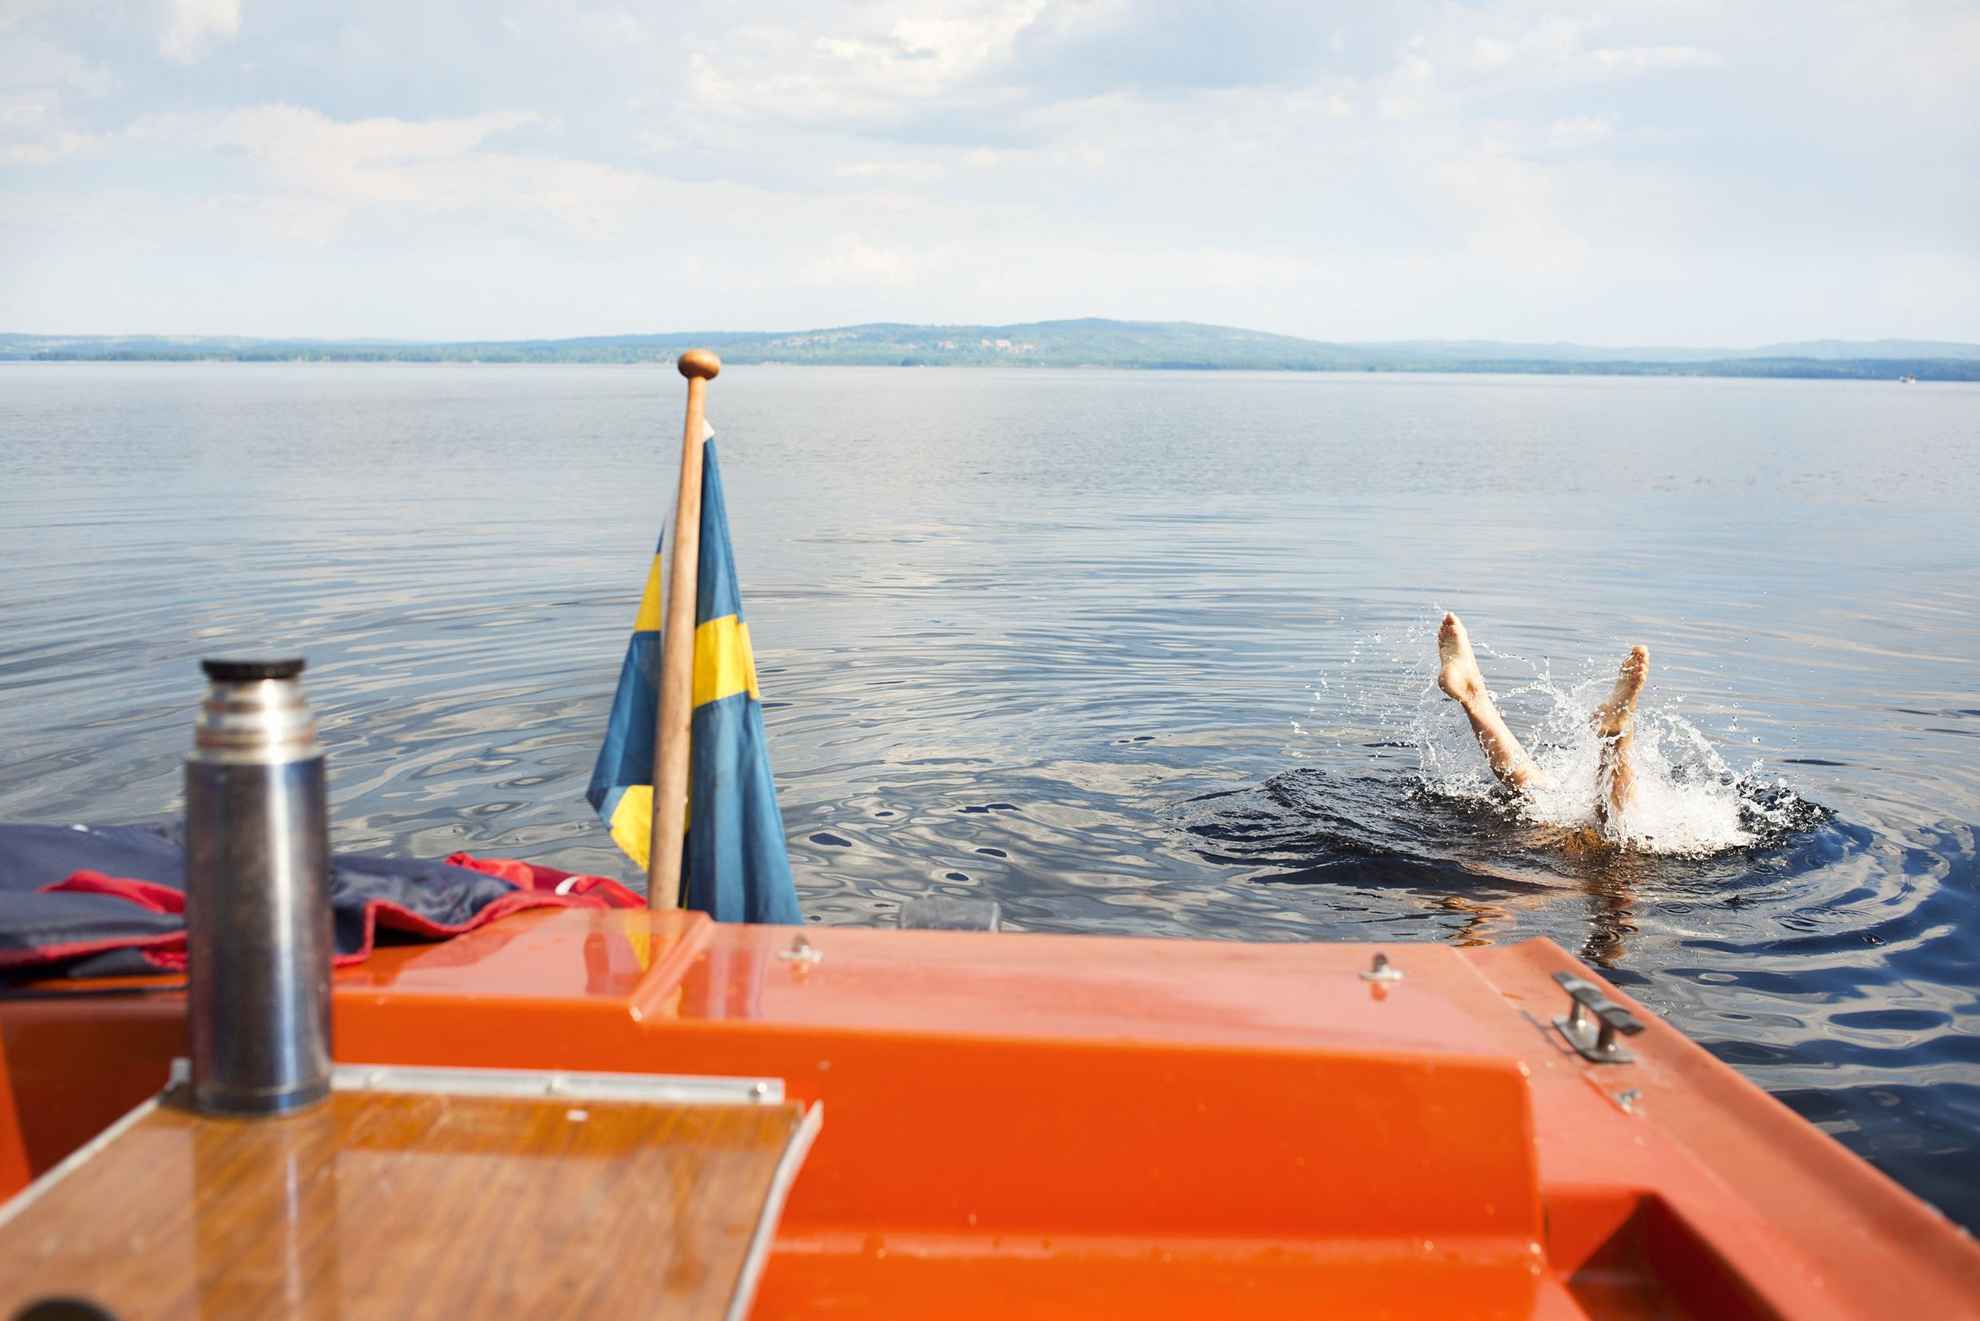 Ein Kind springt von einem Boot in den Siljan See in Dalarna an einem Sommertag. Die Schwedische Flagge ist an dem orangenen Boot befestigt.